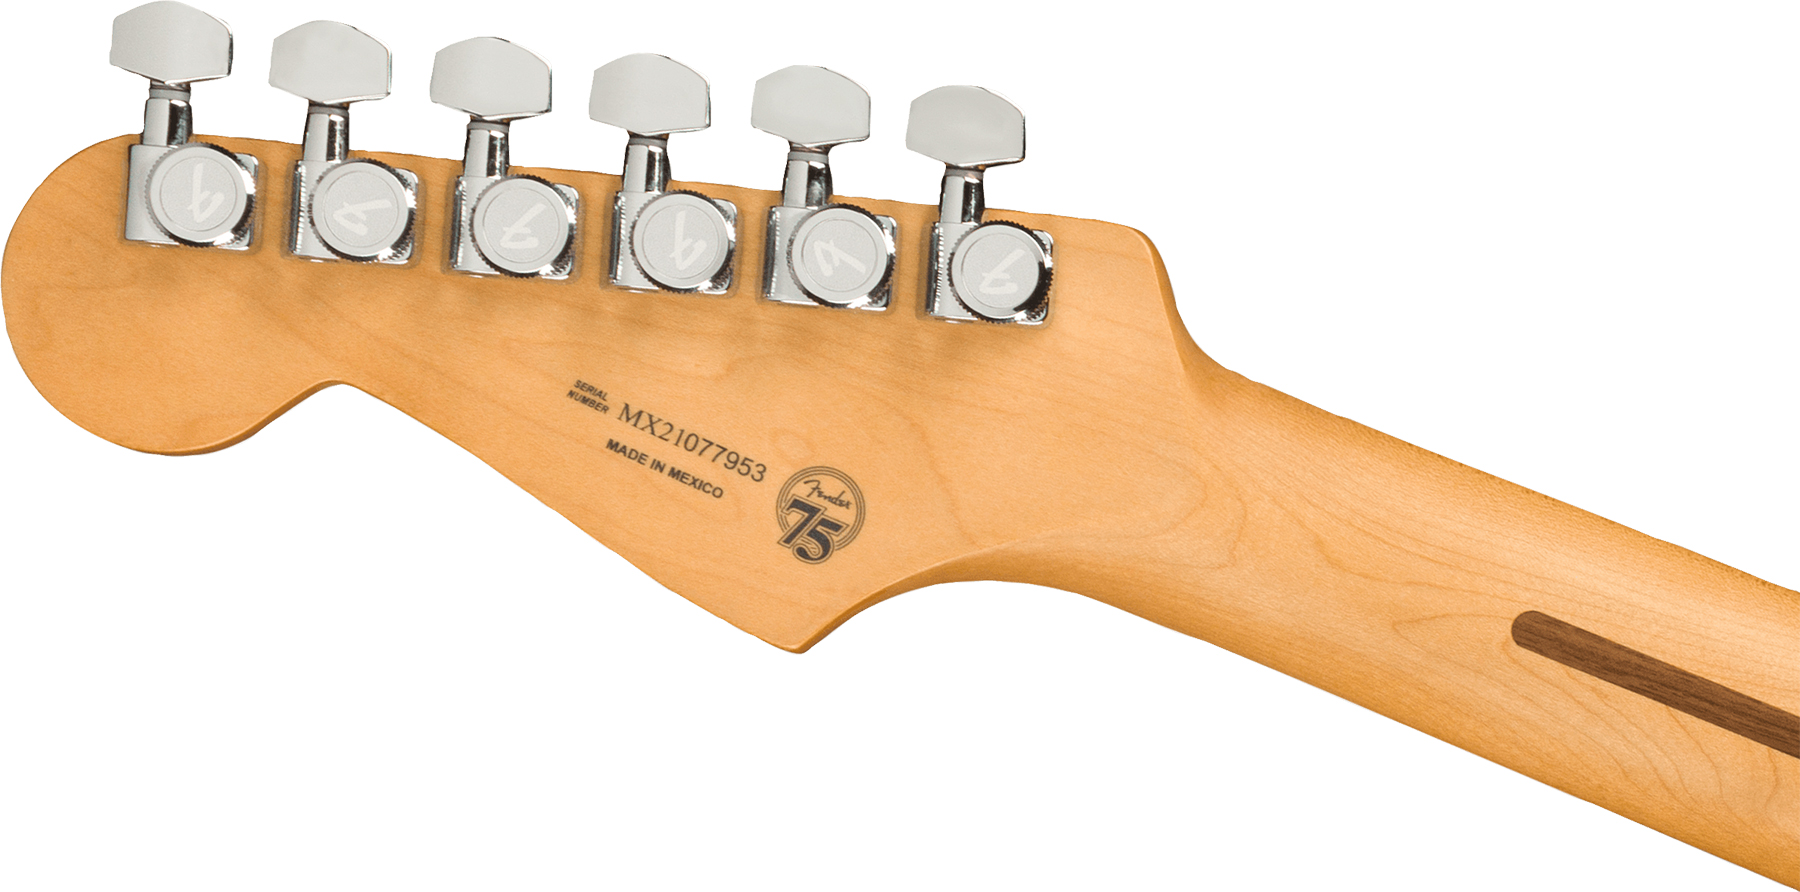 Fender Strat Player Plus Mex Hss Trem Mn - Cosmic Jade - Elektrische gitaar in Str-vorm - Variation 3